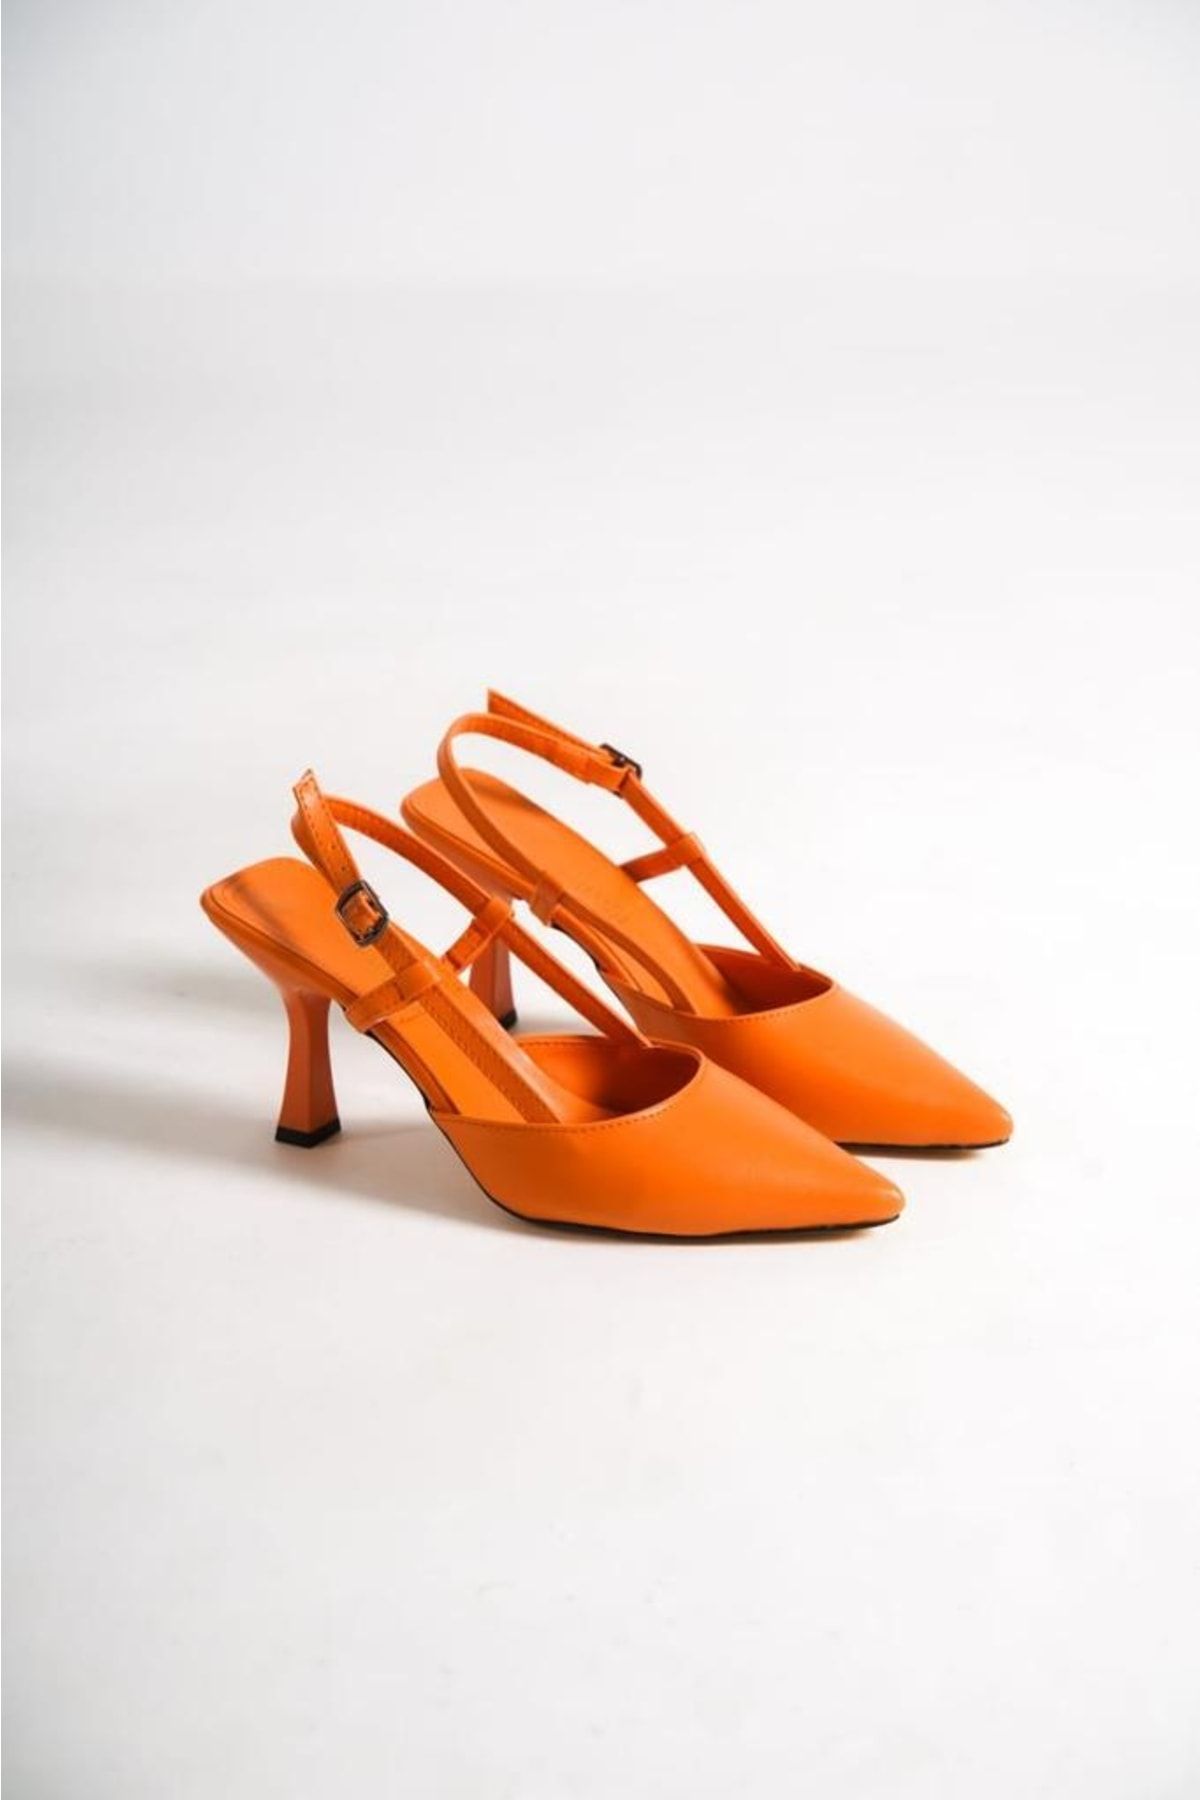 serelshoes Kadın Topuklu Ayakkabı Arkası Açık Direkli Tokalı Topuk 9 Cm